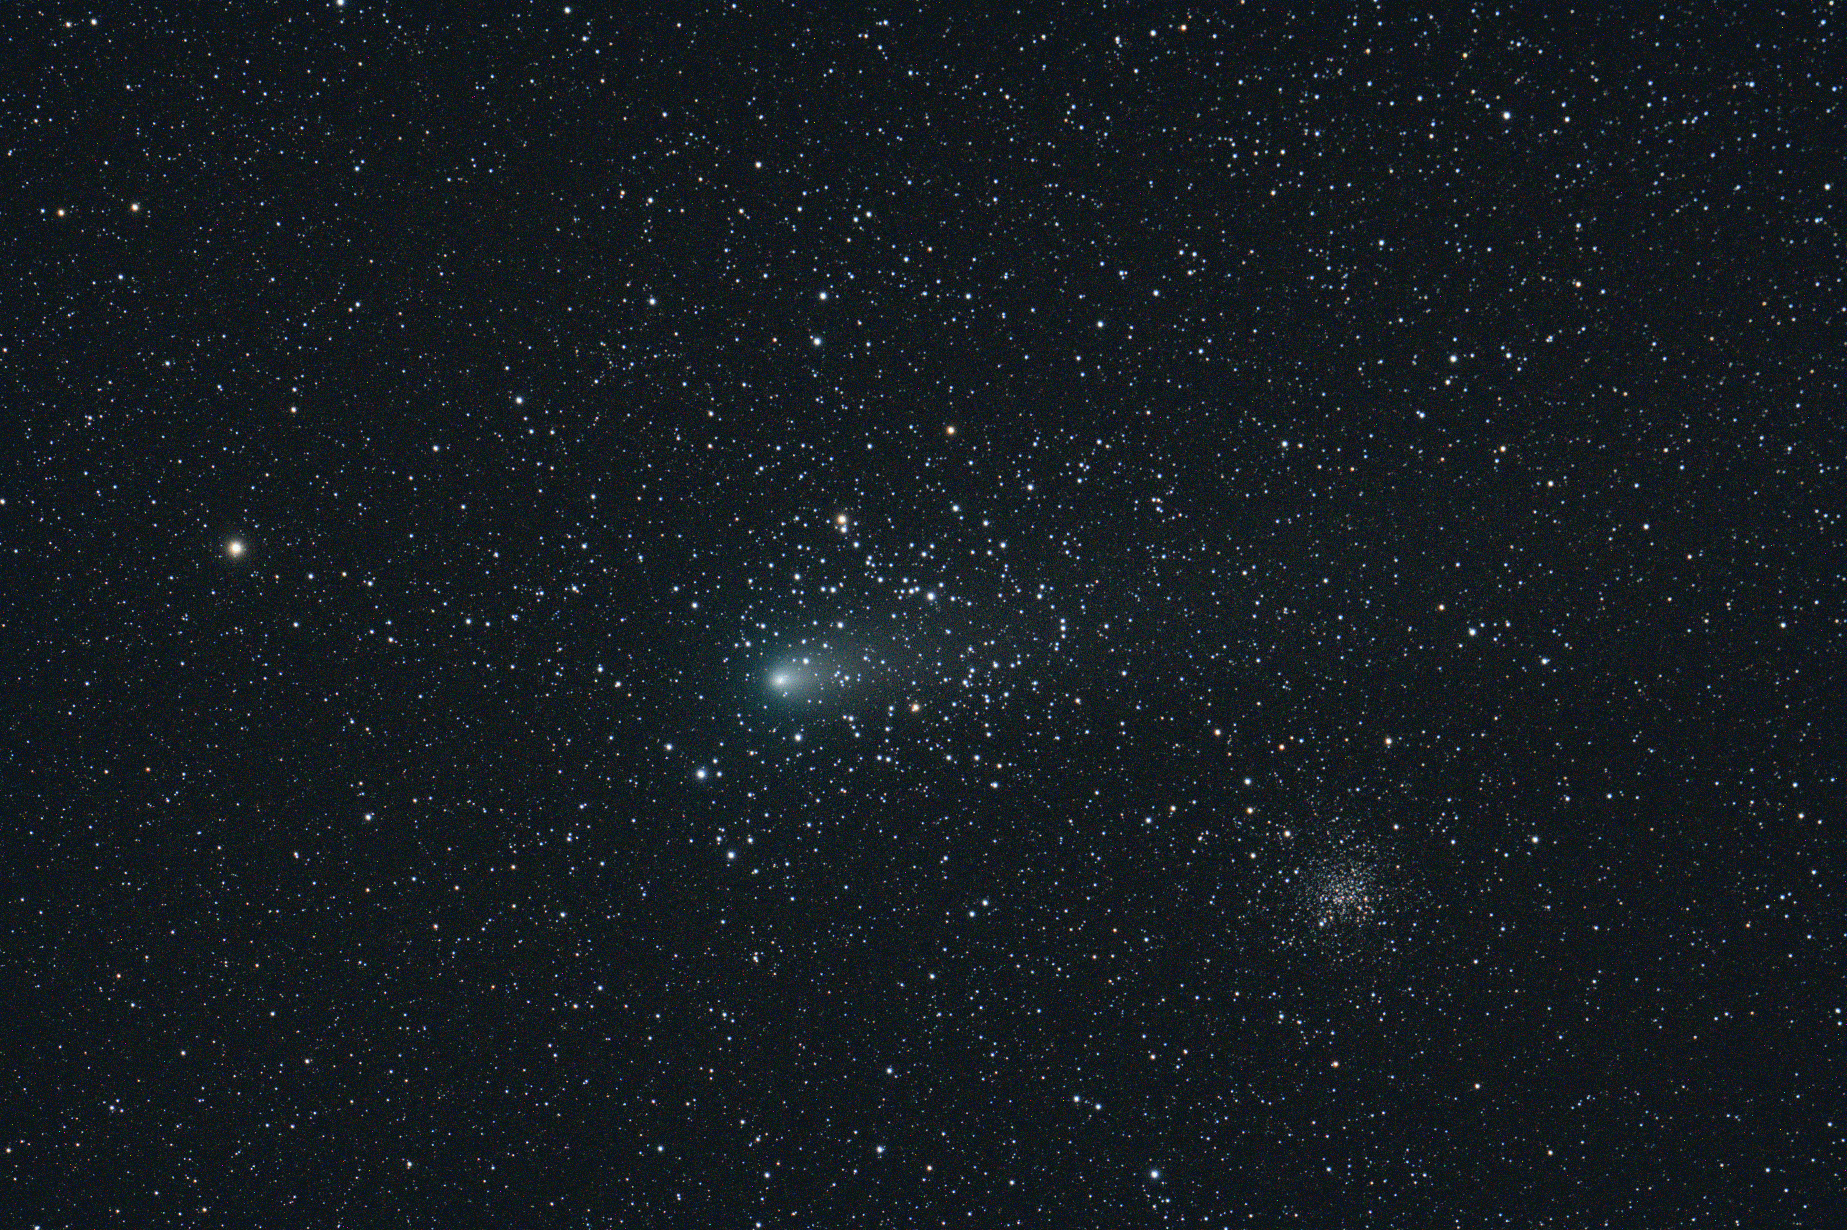 Comet 21P/Giacobini-Zinner in Gemini 15-Sep-2018